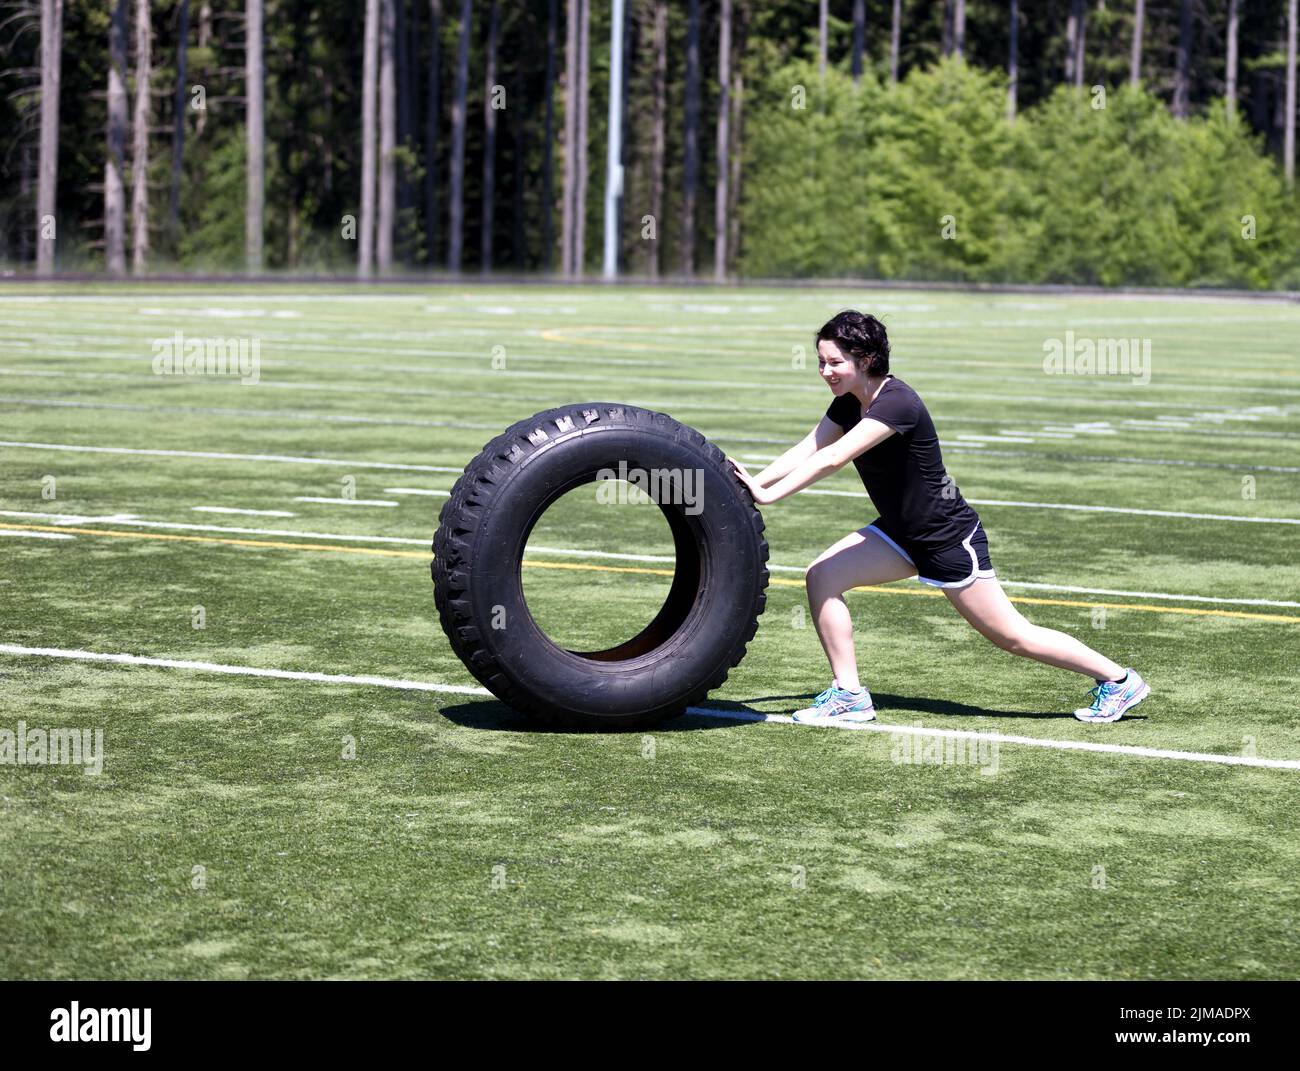 Une jeune fille qui pousse des pneus lourds sur le terrain de sport pendant une journée chaude Banque D'Images